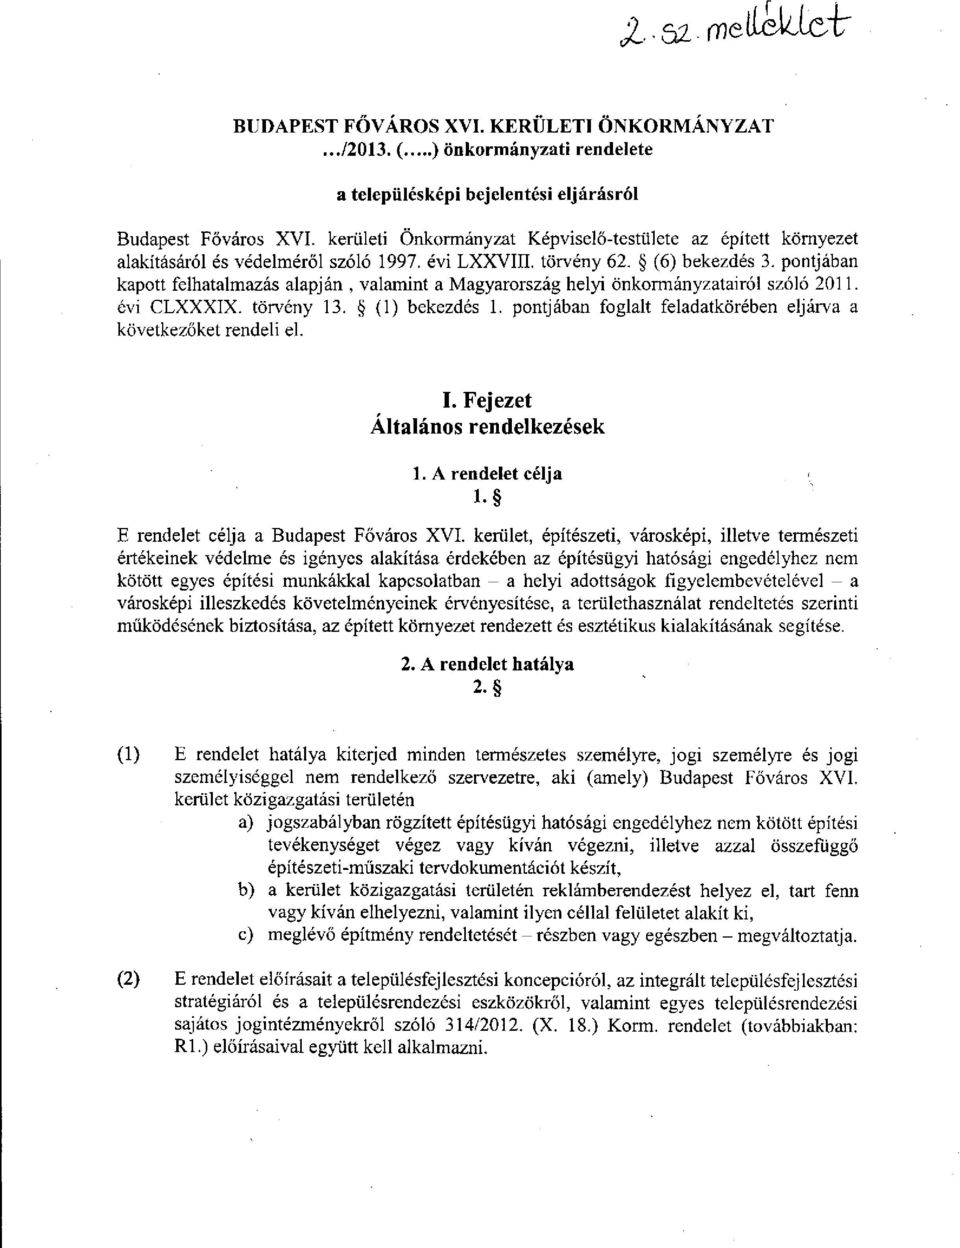 pontjában kapott felhatalmazás alapján, valamint a Magyarország helyi önkormányzatairól szóló 2011. évi CLXXXIX. törvény 13. (1) bekezdés 1.